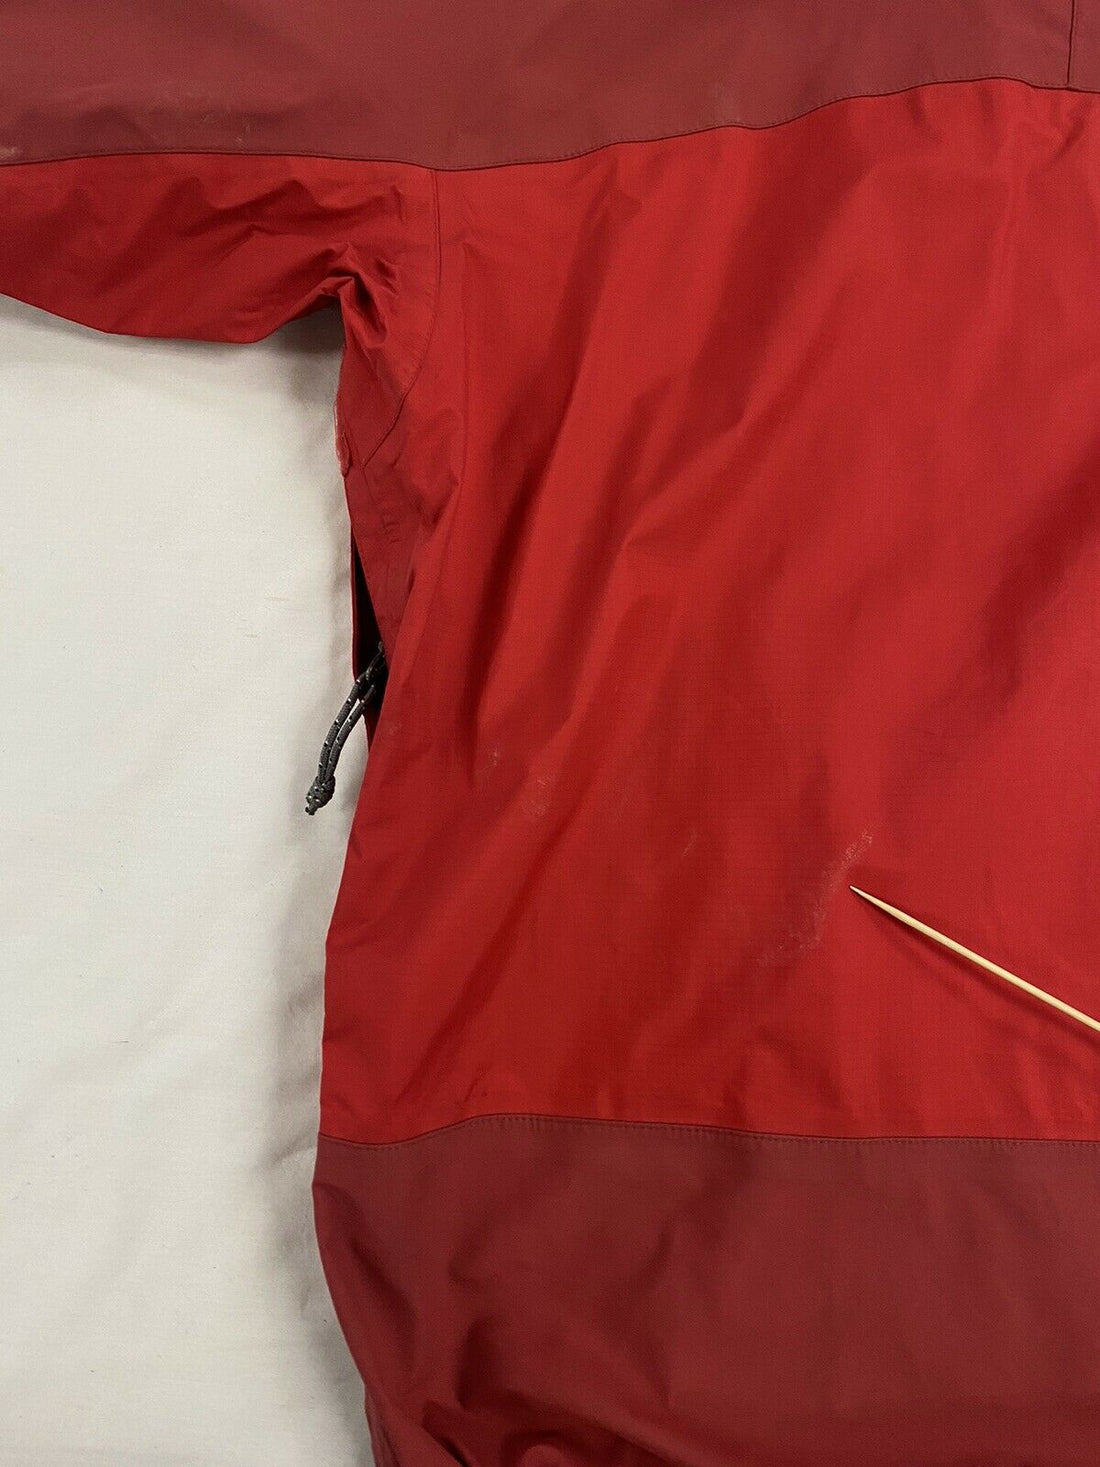 Vintage Patagonia Windbreaker Light Ski Jacket Size Medium Red